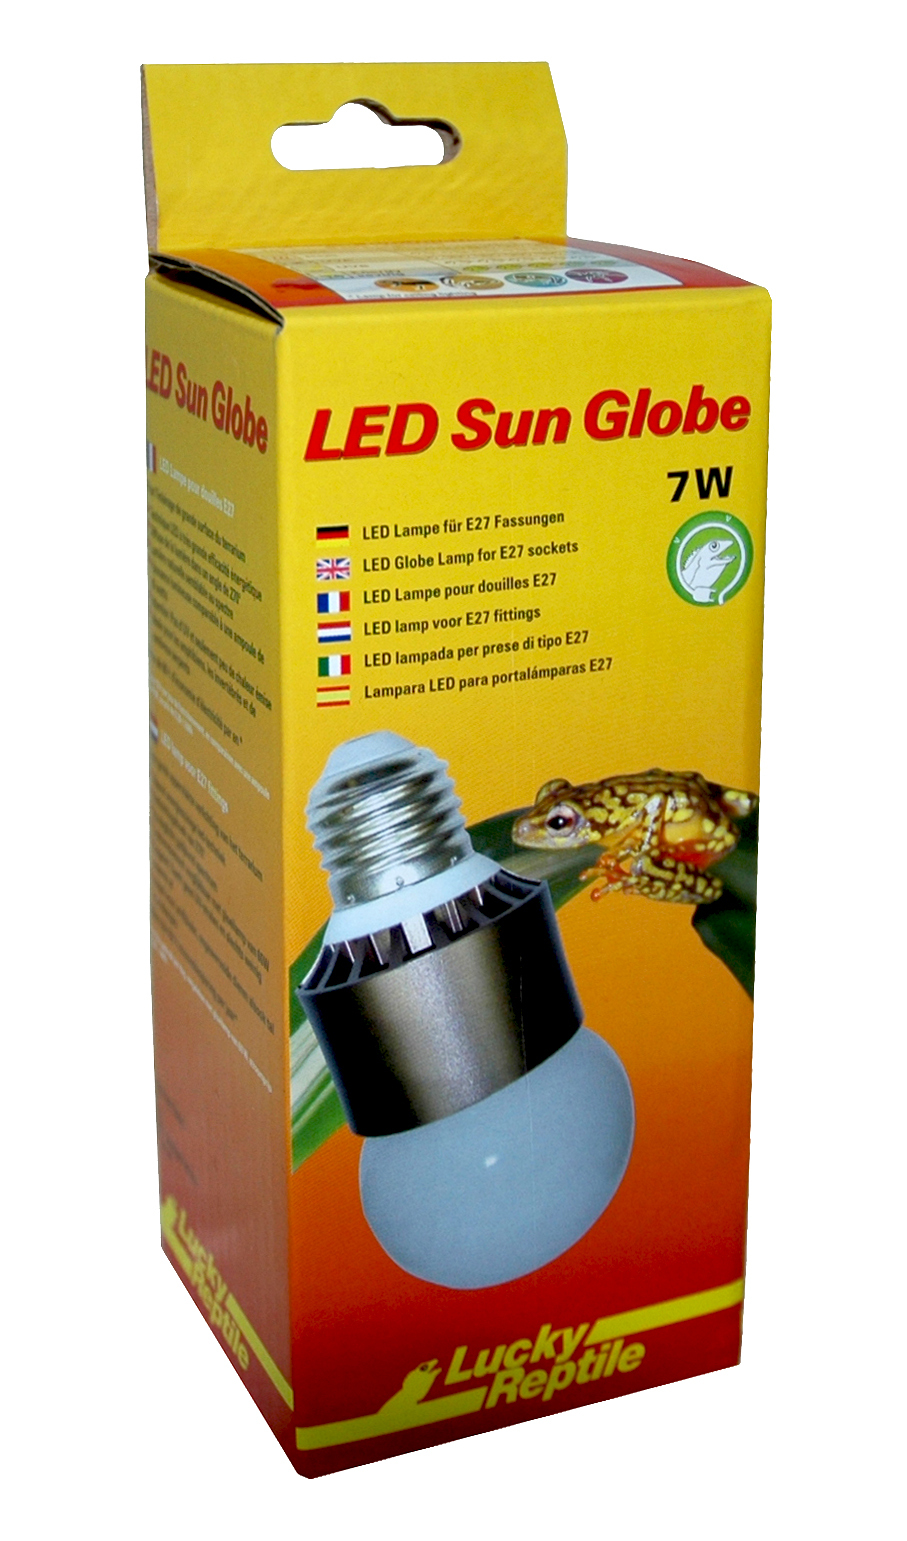 LED Sun Globe 7W